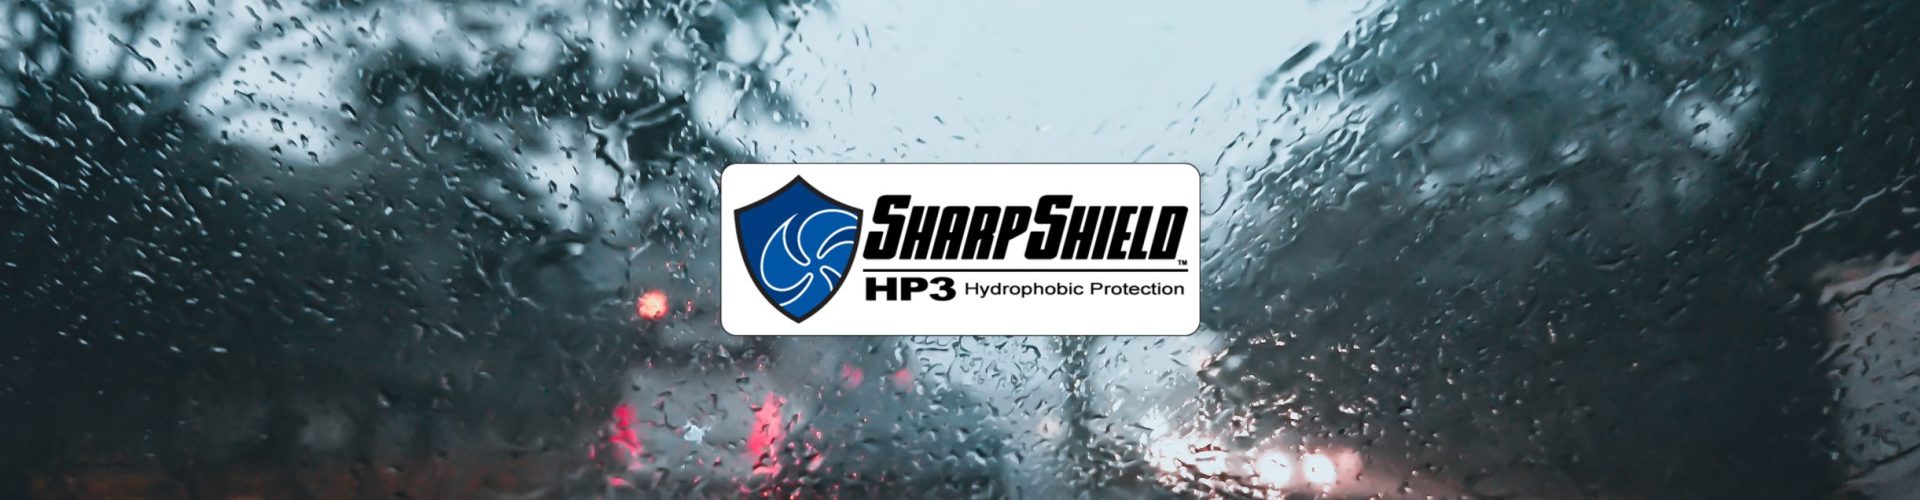 SharpShield HP3, car-windshield, heavy rain